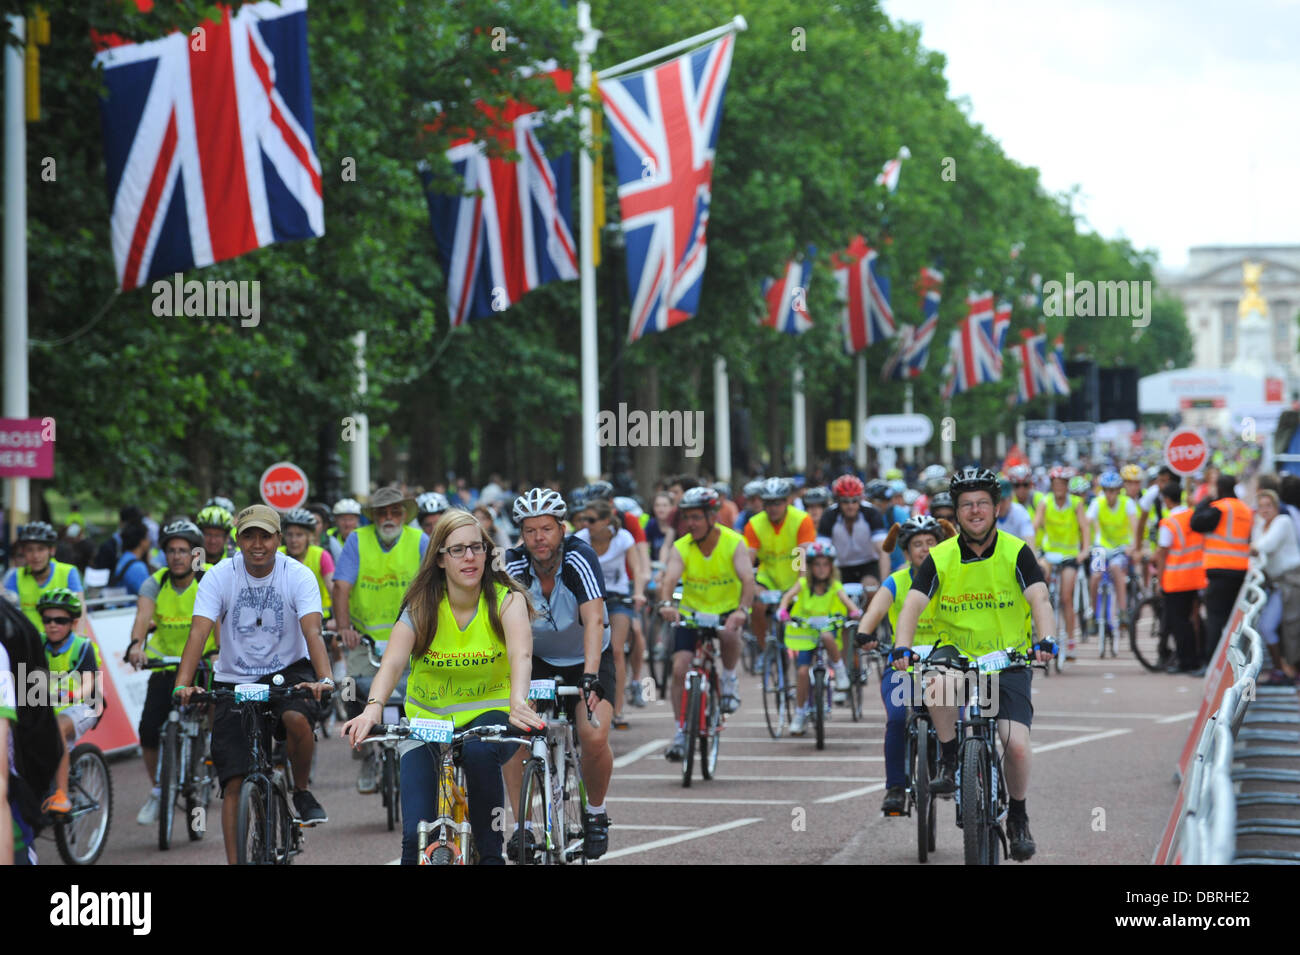 Le Mall, Londres, Royaume-Uni. 3 août 2013. Les cyclistes de tous âges participent à l'événement Cycle libre, partie de la Prudential RideLondon cycling event. Crédit : Matthieu Chattle/Alamy Live News Banque D'Images